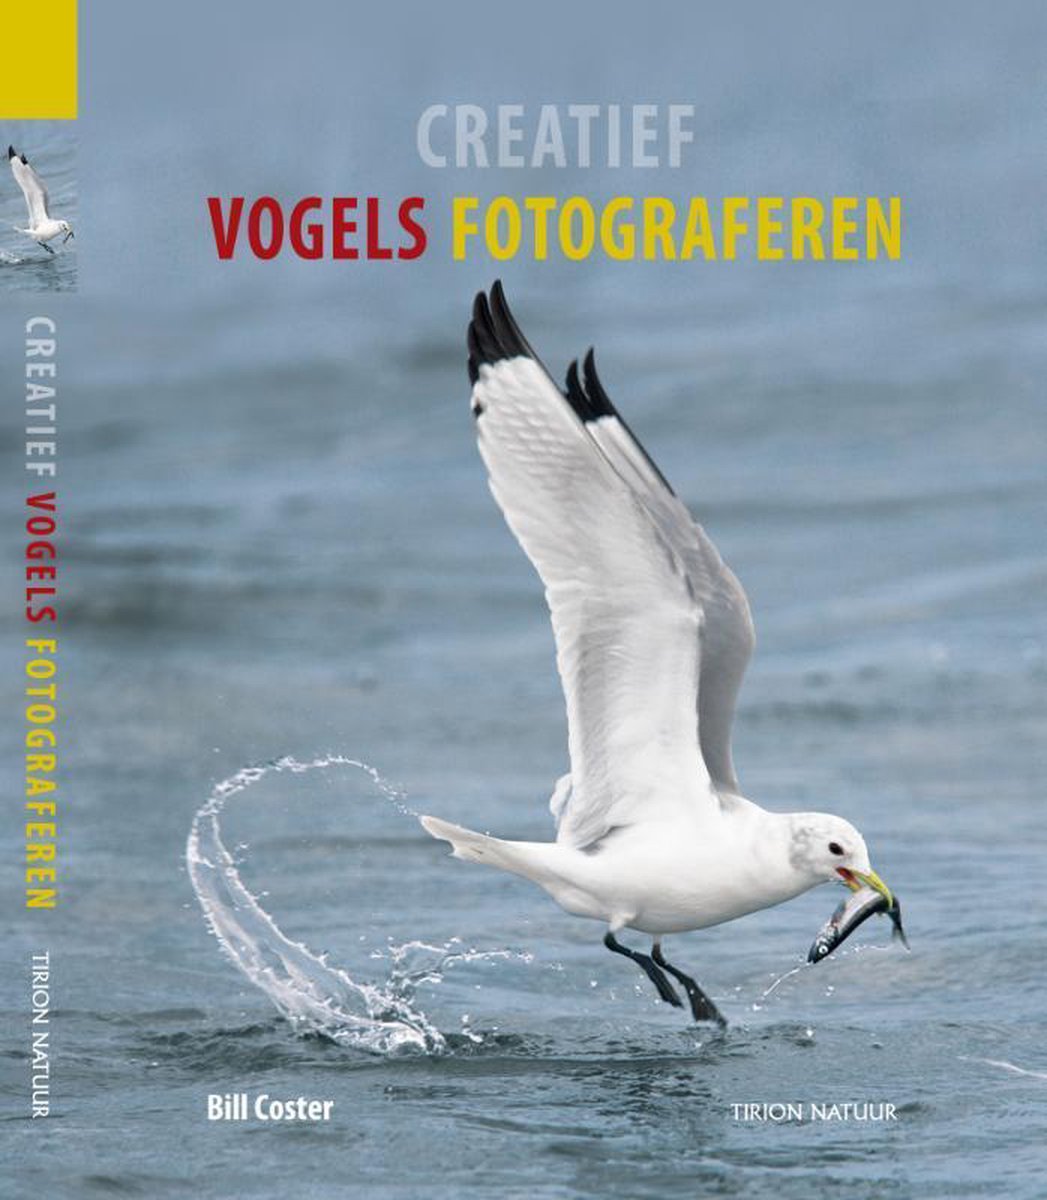 Creatief Vogels Fotograferen - Bill Coster